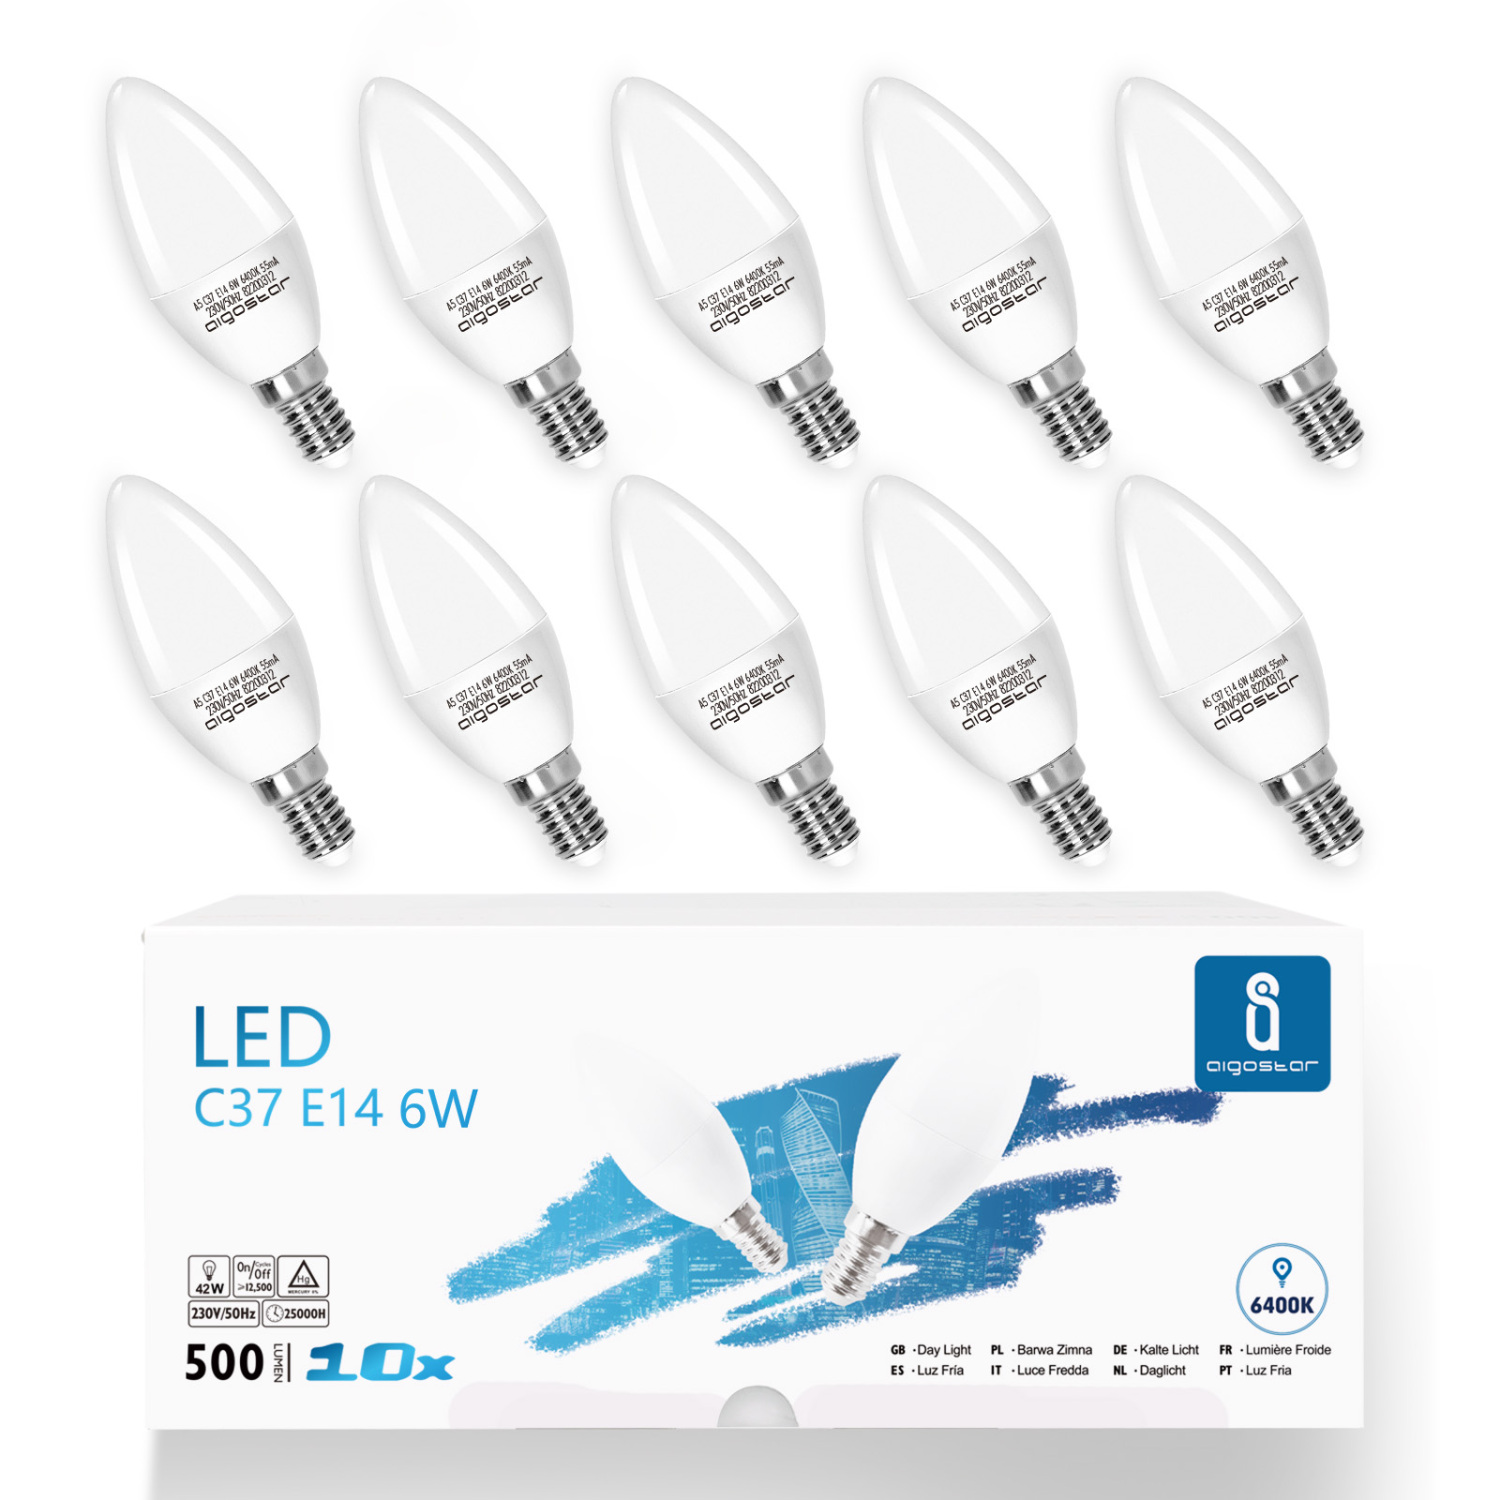 Led Kaltweiß E14 6W (ersetzt 40W), Leuchtmittel Birne Lampe 6400K 500 Lumen, Abstrahlwinkel 260 Grad Glühbirnen Kerzenform C37 10er Verpack